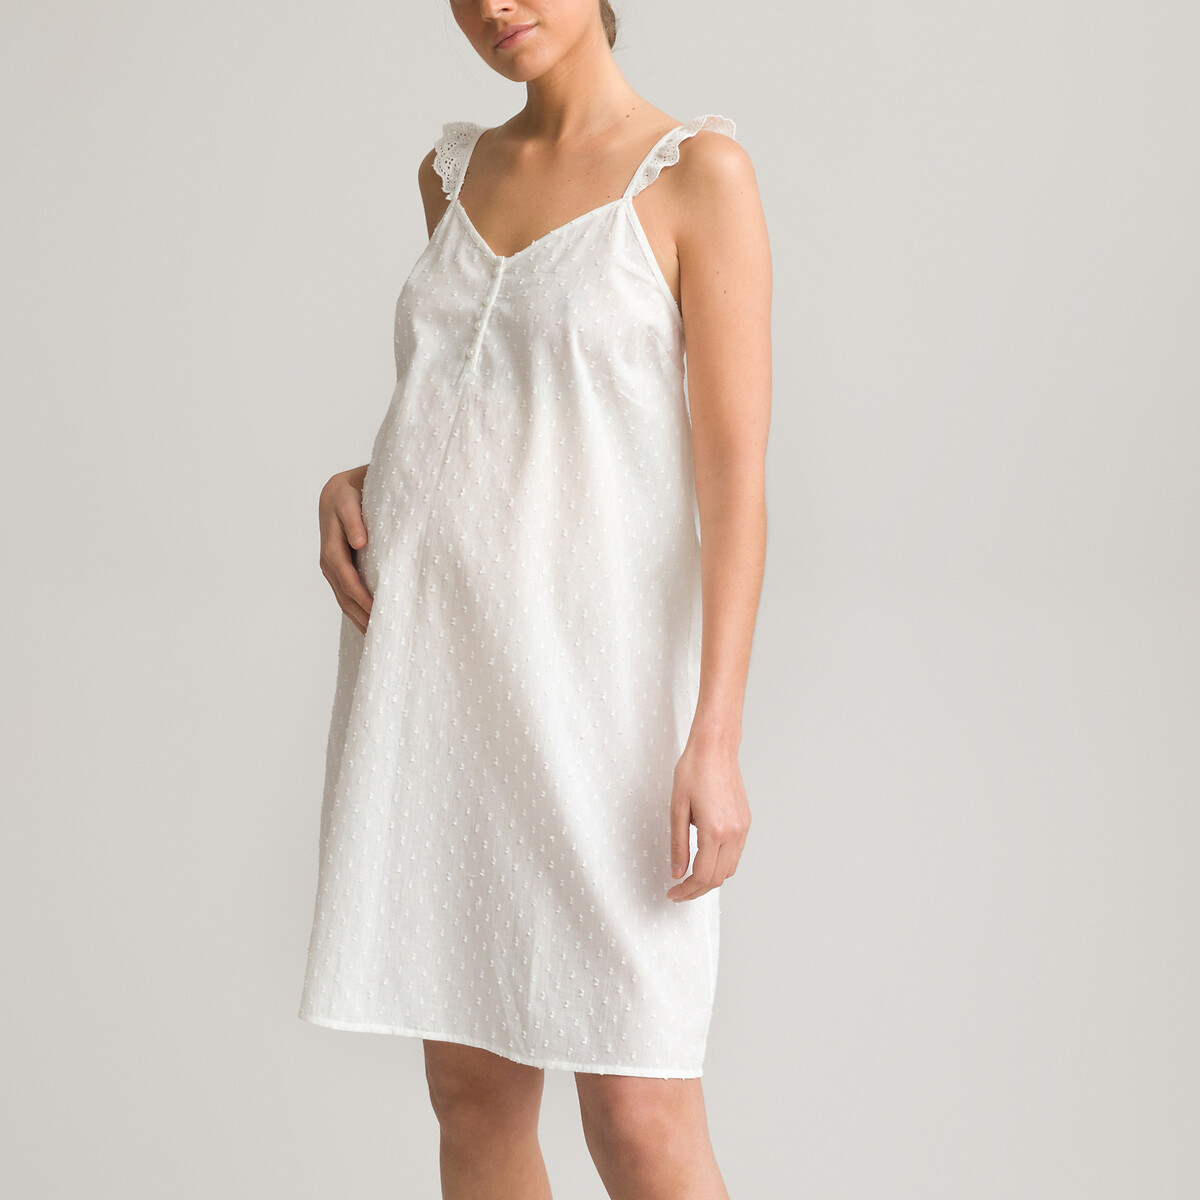 Рубашка LA REDOUTE COLLECTIONS Ночная для периода беременности из хлопка с вышивкой гладью 44 (FR) - 50 (RUS) белый, размер 44 (FR) - 50 (RUS)